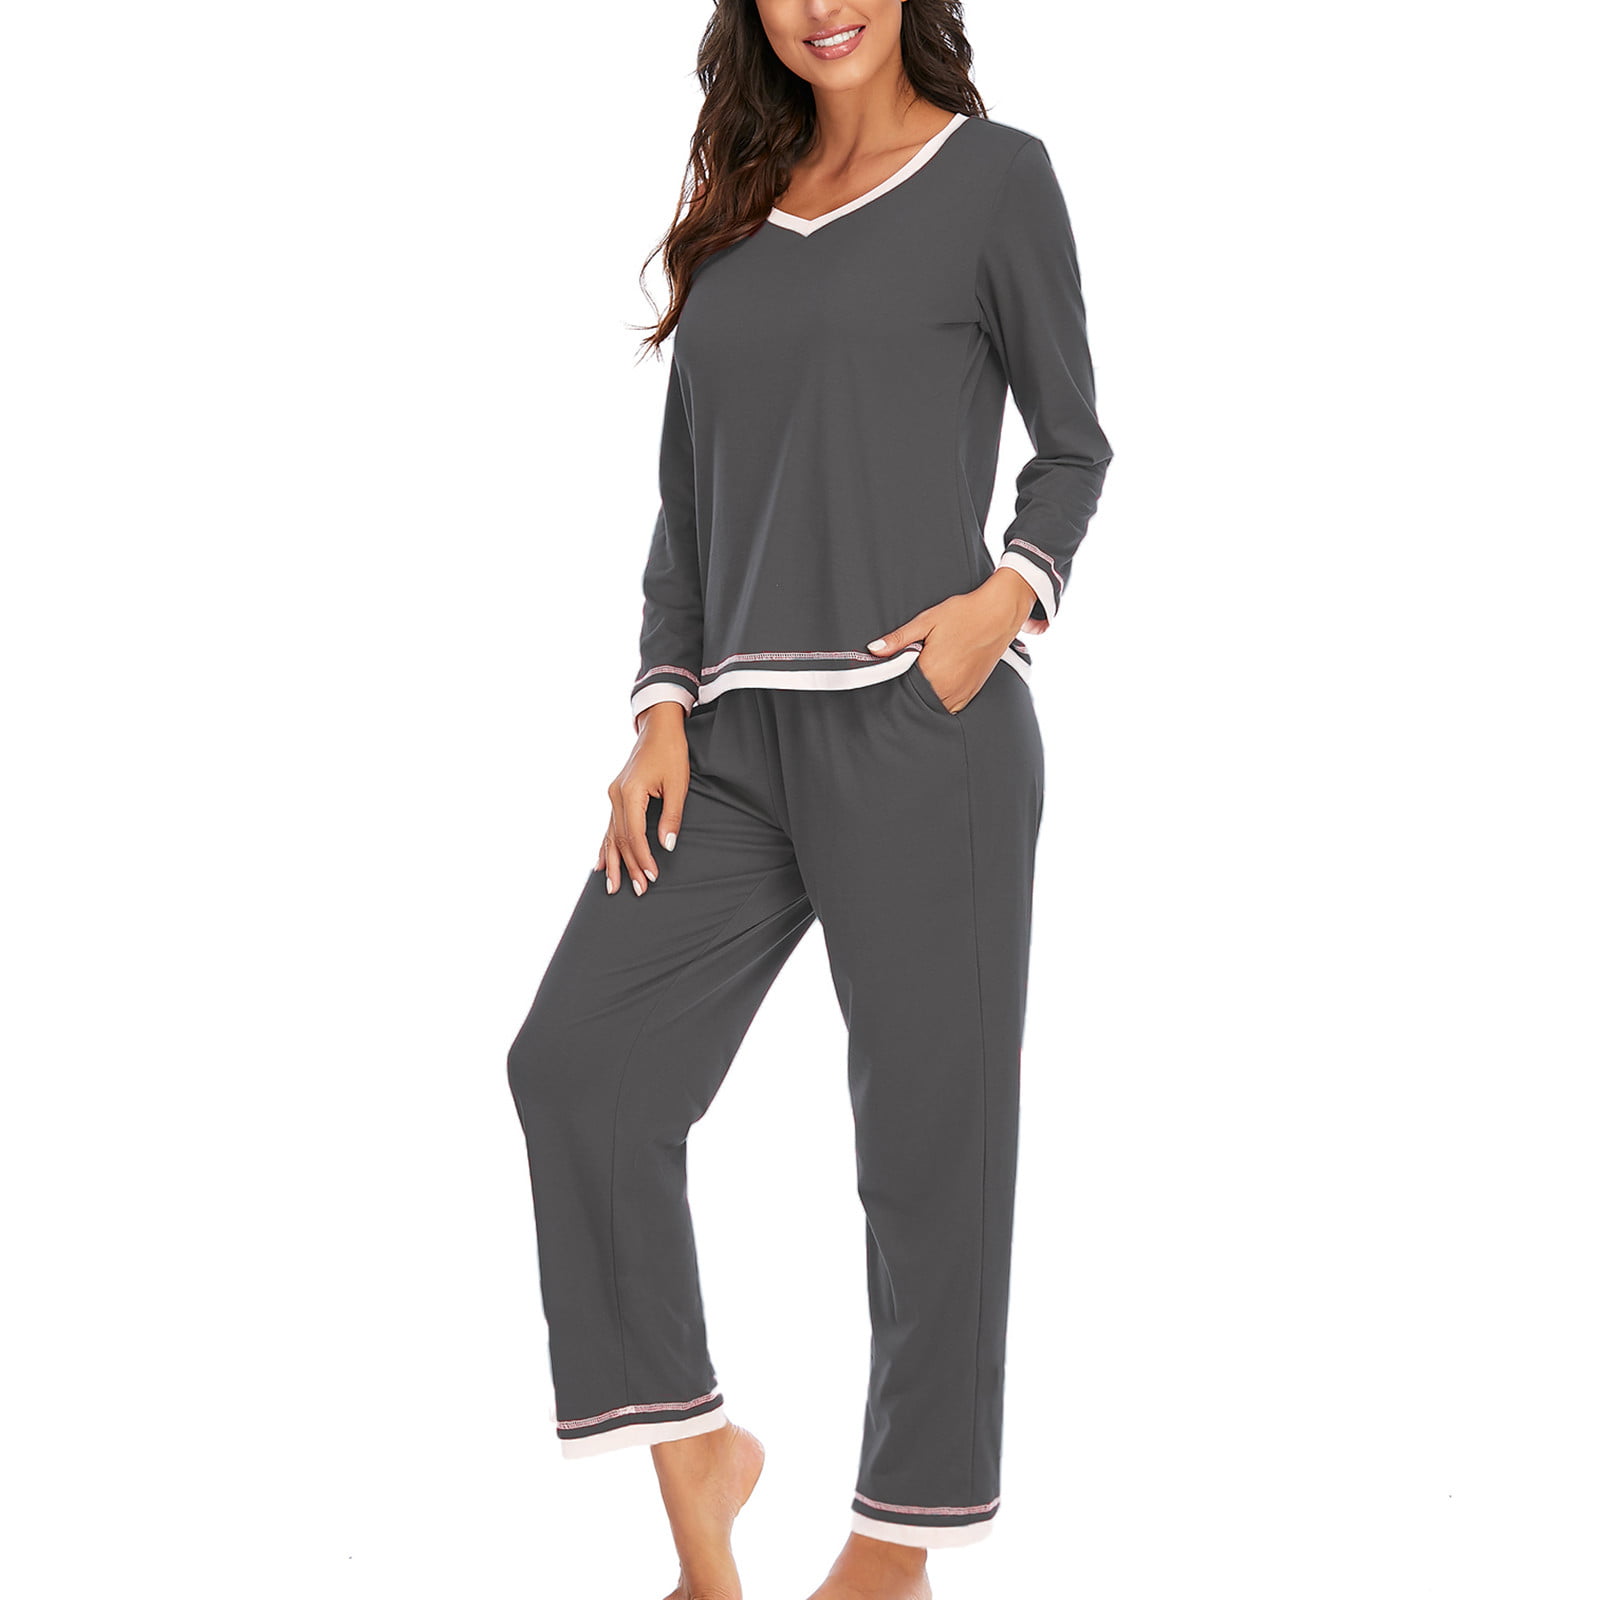 Nighty Girl Xxx Indian - Wetopw Women's Pajama Lingerie Sleepwear, Women Fashion Splicing Sets Wear  Lounge Wear Home Sleep Set Tops+Pants , Nightwear Loungewear Lingerie WD -  Walmart.com